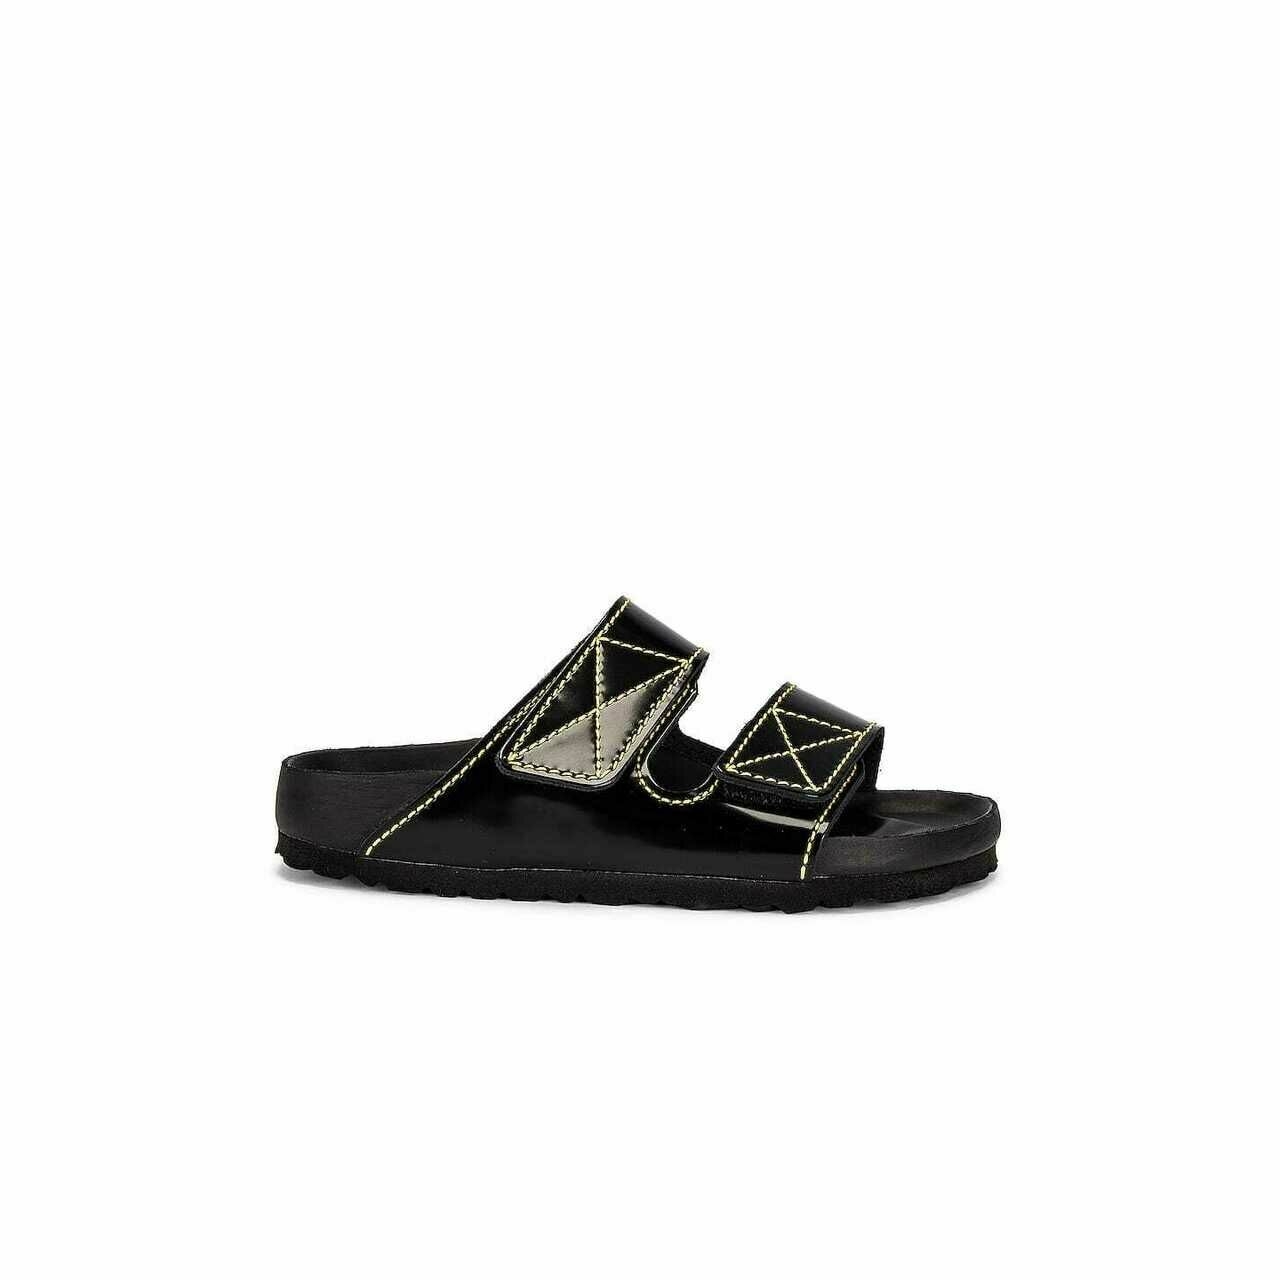 Proenza Schouler Black Sandals